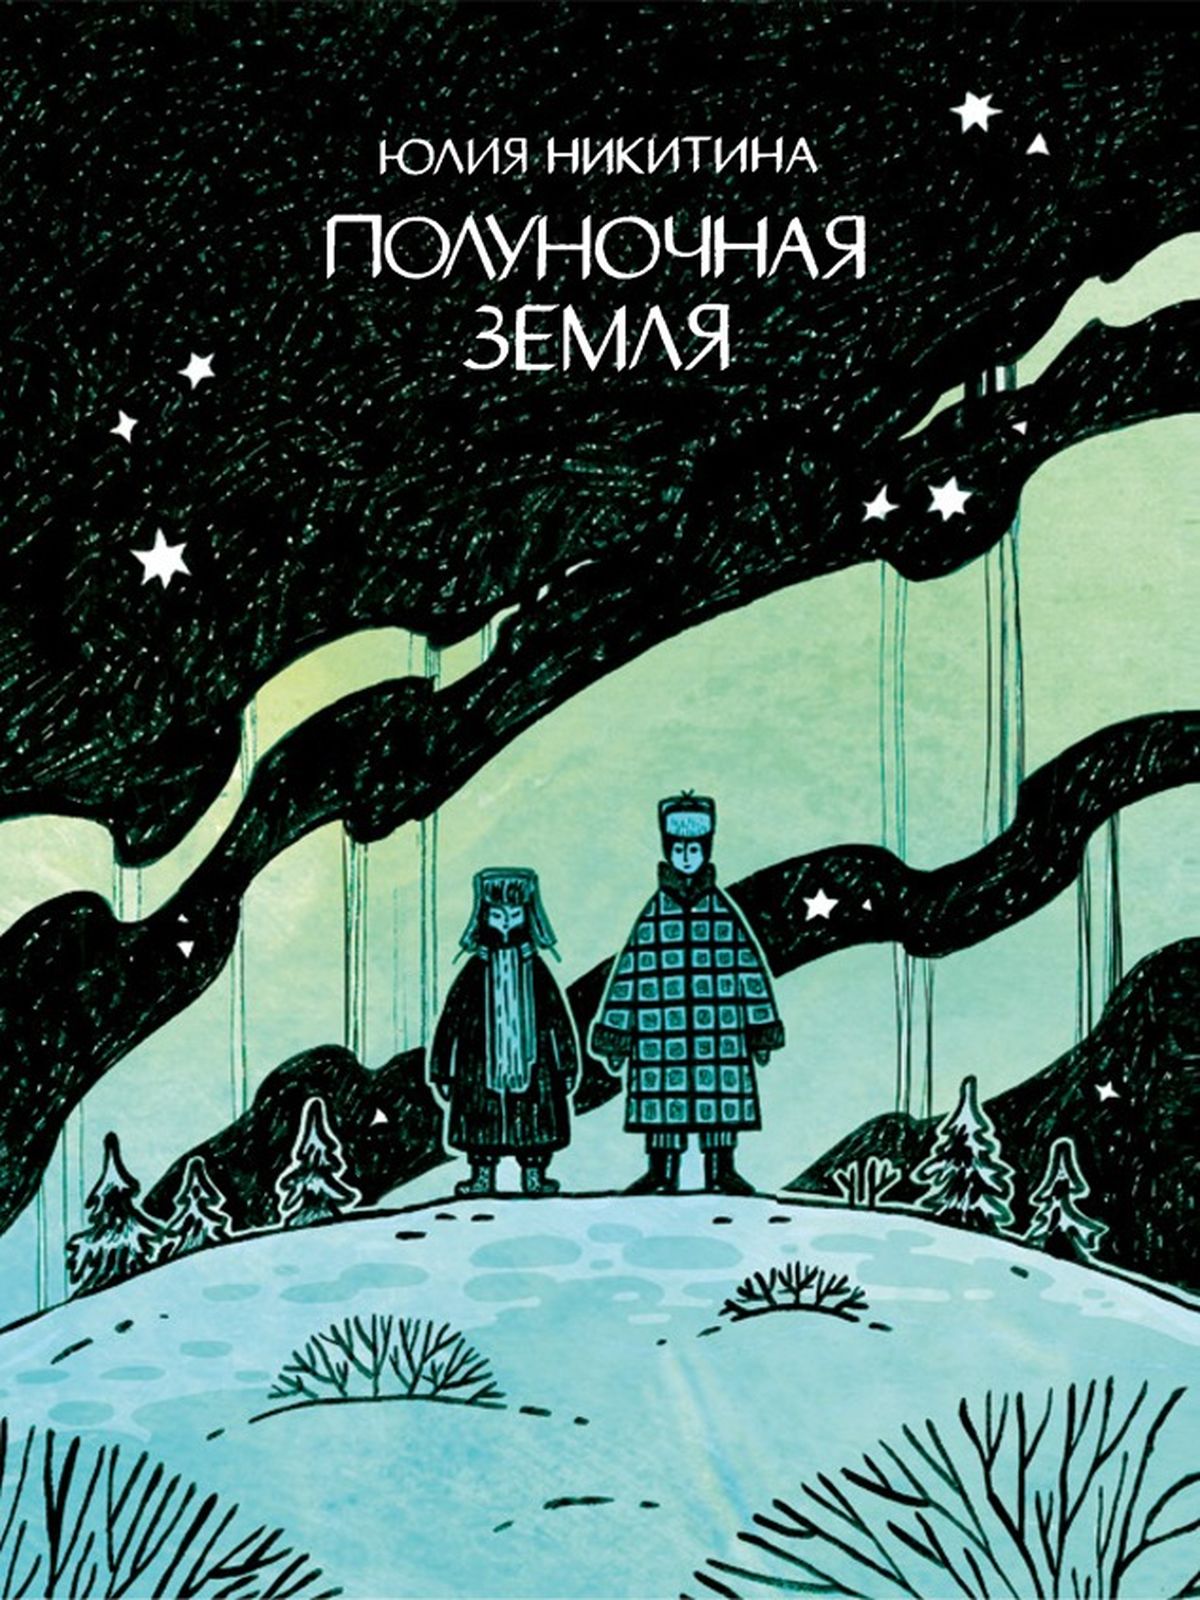 Комикс на русском языке "Полуночная земля"